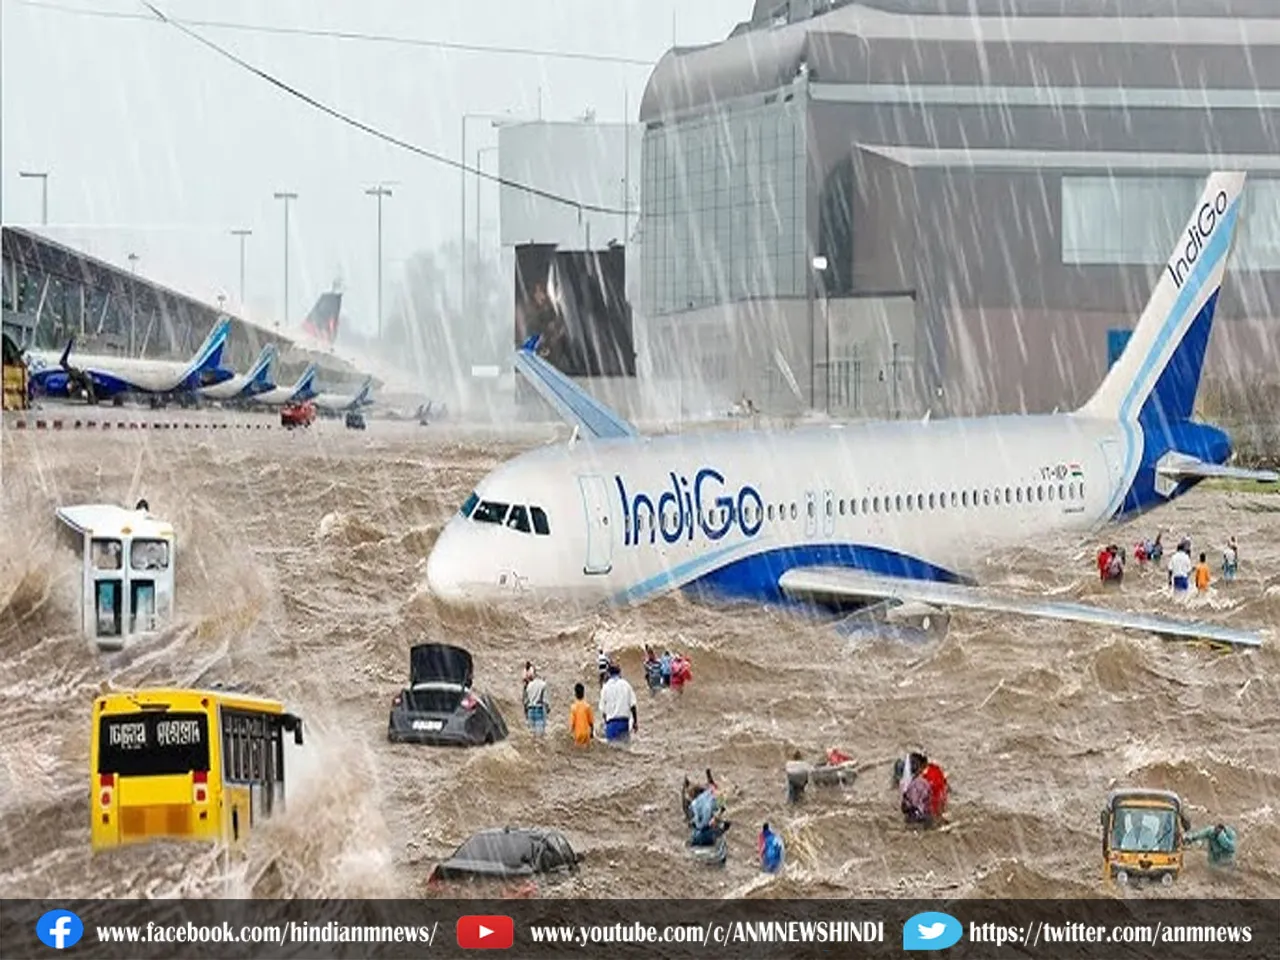 चैनई एयरपोर्ट का बारिश से बुरा हाल, देखिए वीडियो